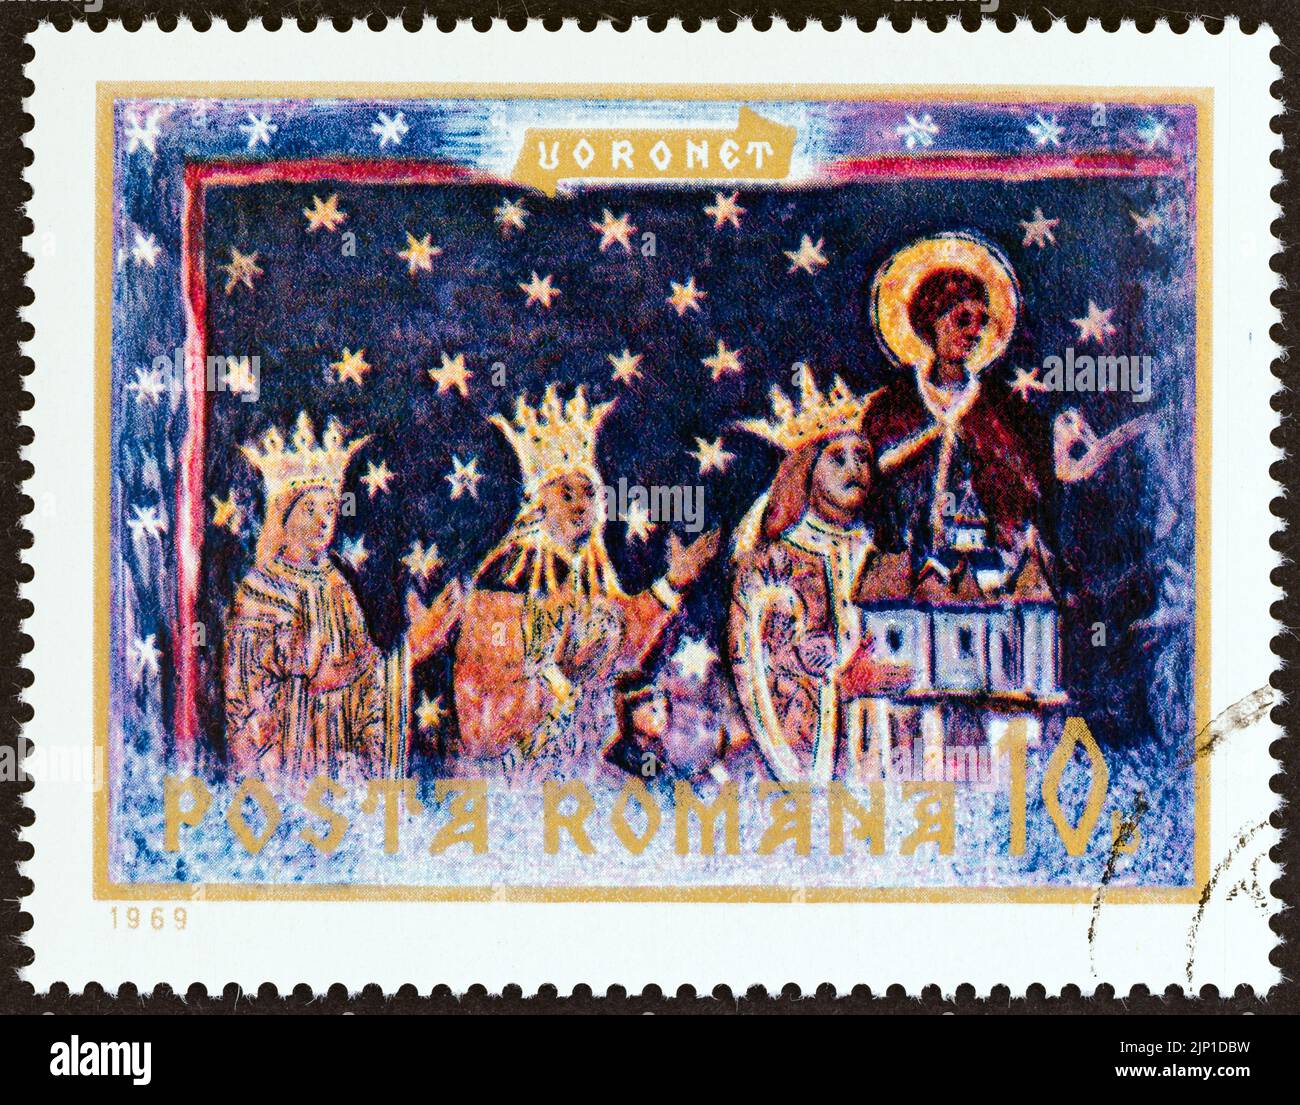 OMANIA - CIRCA 1969: A stamp printed in Romania shows Three Kings fresco, Voronet Monastery, circa 1969. Stock Photo